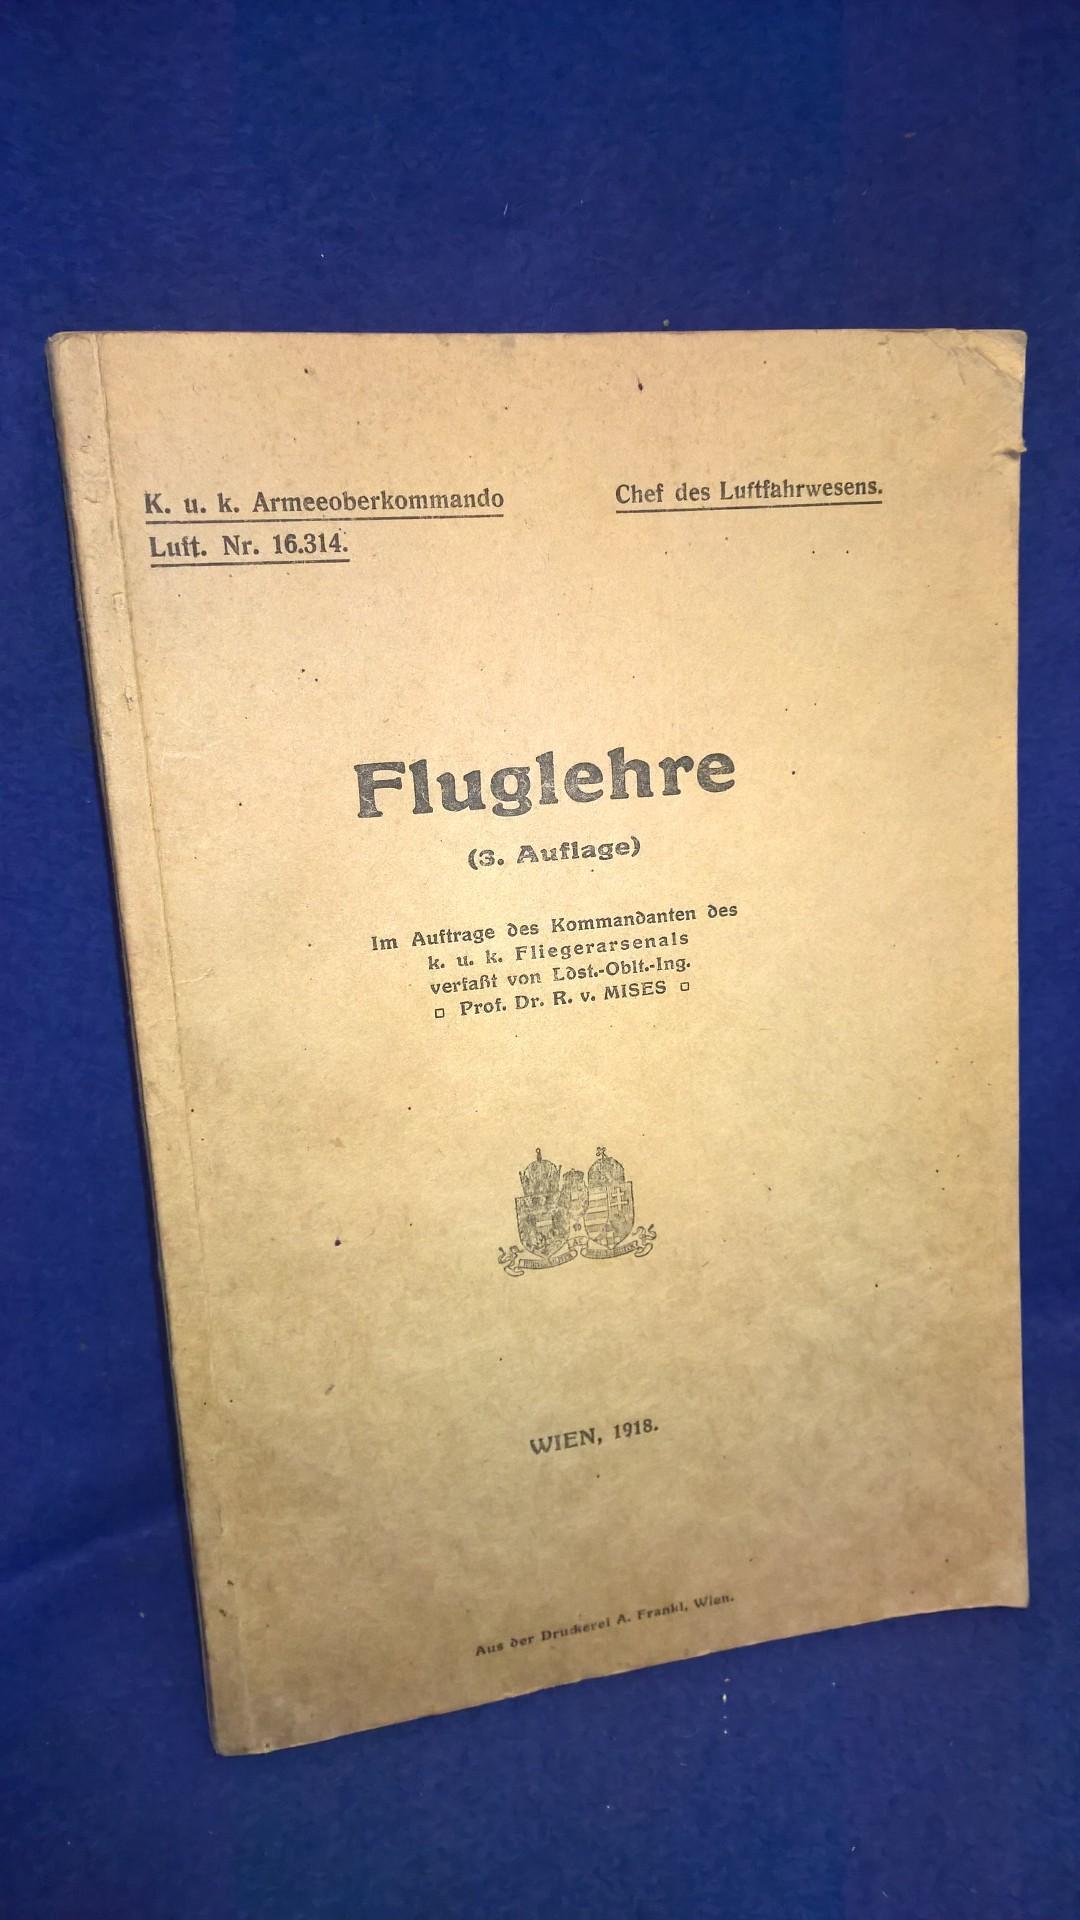 K.u.K. Armeeoberkommando Luft. Chef des Luftfahrwesens. FLUGLEHRE. Seltene Schrift aus dem Kriegsjahr 1918.